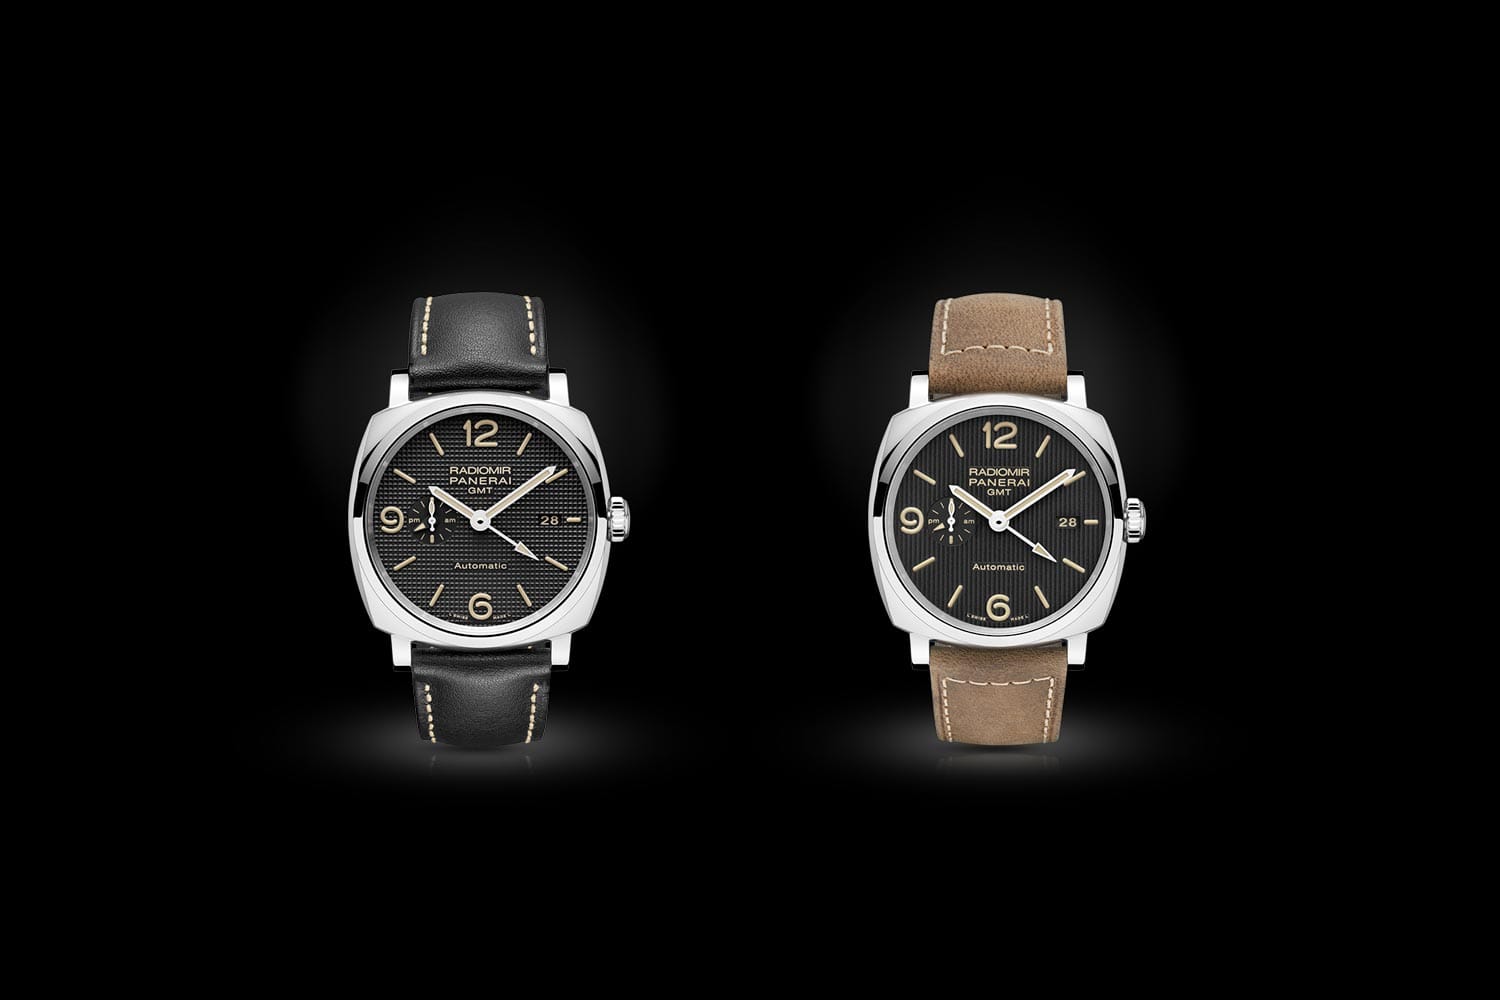 Die legendären Taucheruhren von Panerai werden gern mit verschiedenen Armbändern kombiniert. Die neuen Modelle Radomir 1940 zeigen wie unterschiedlich die Uhr wirkt: mal elegant in Schwarz, mal lässig in Braun.